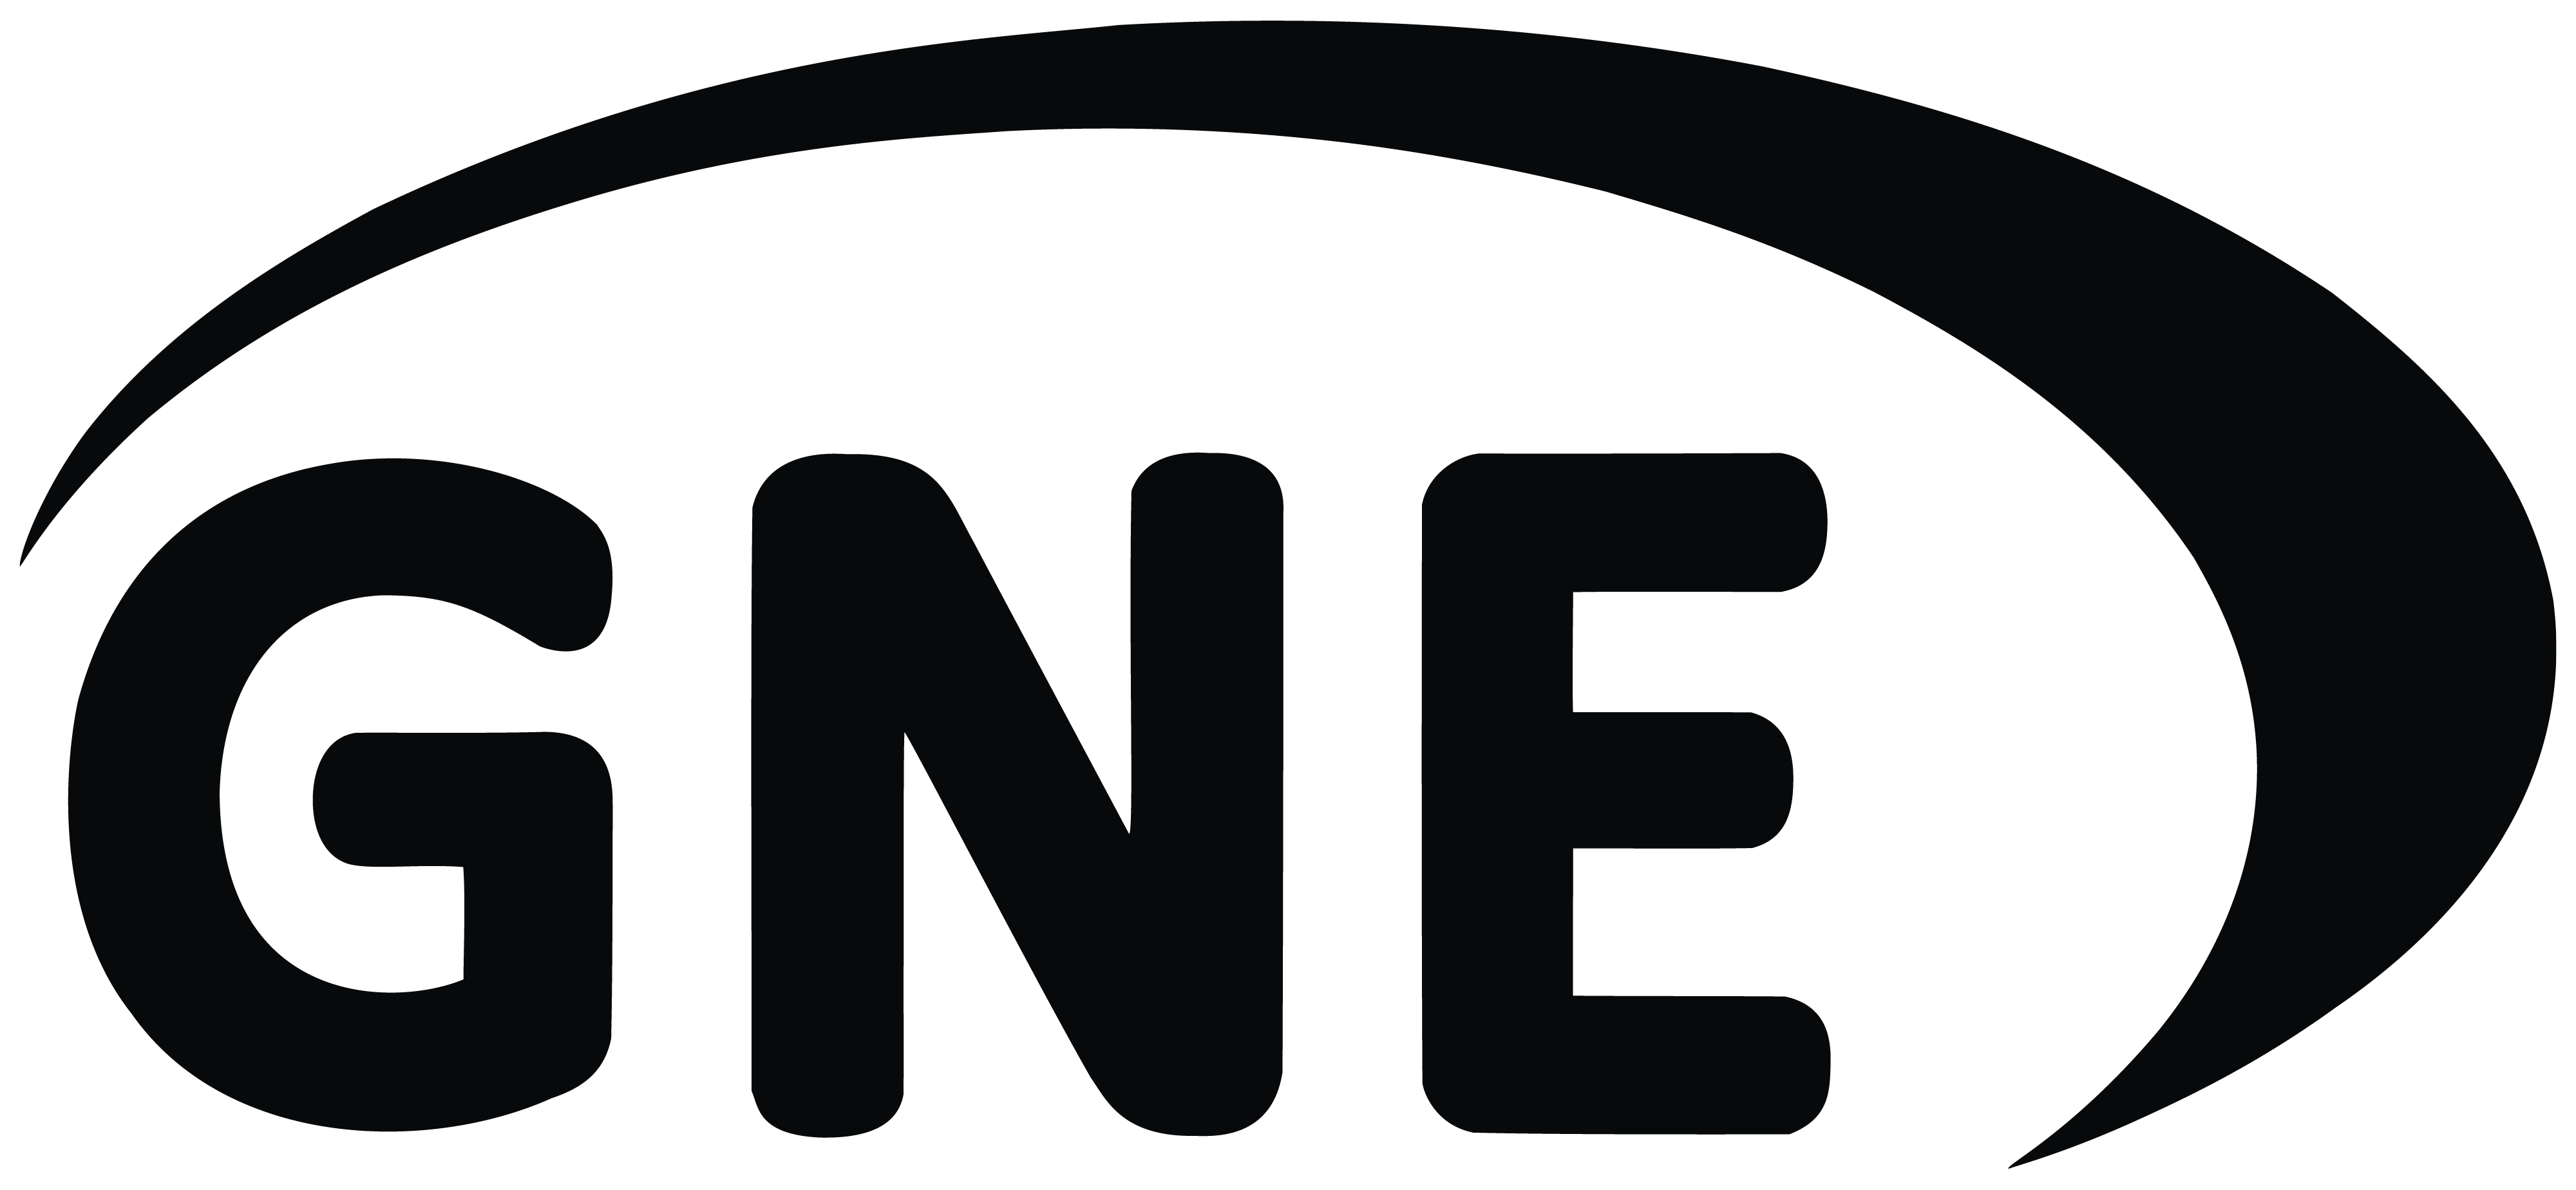 Gne - logo Full black